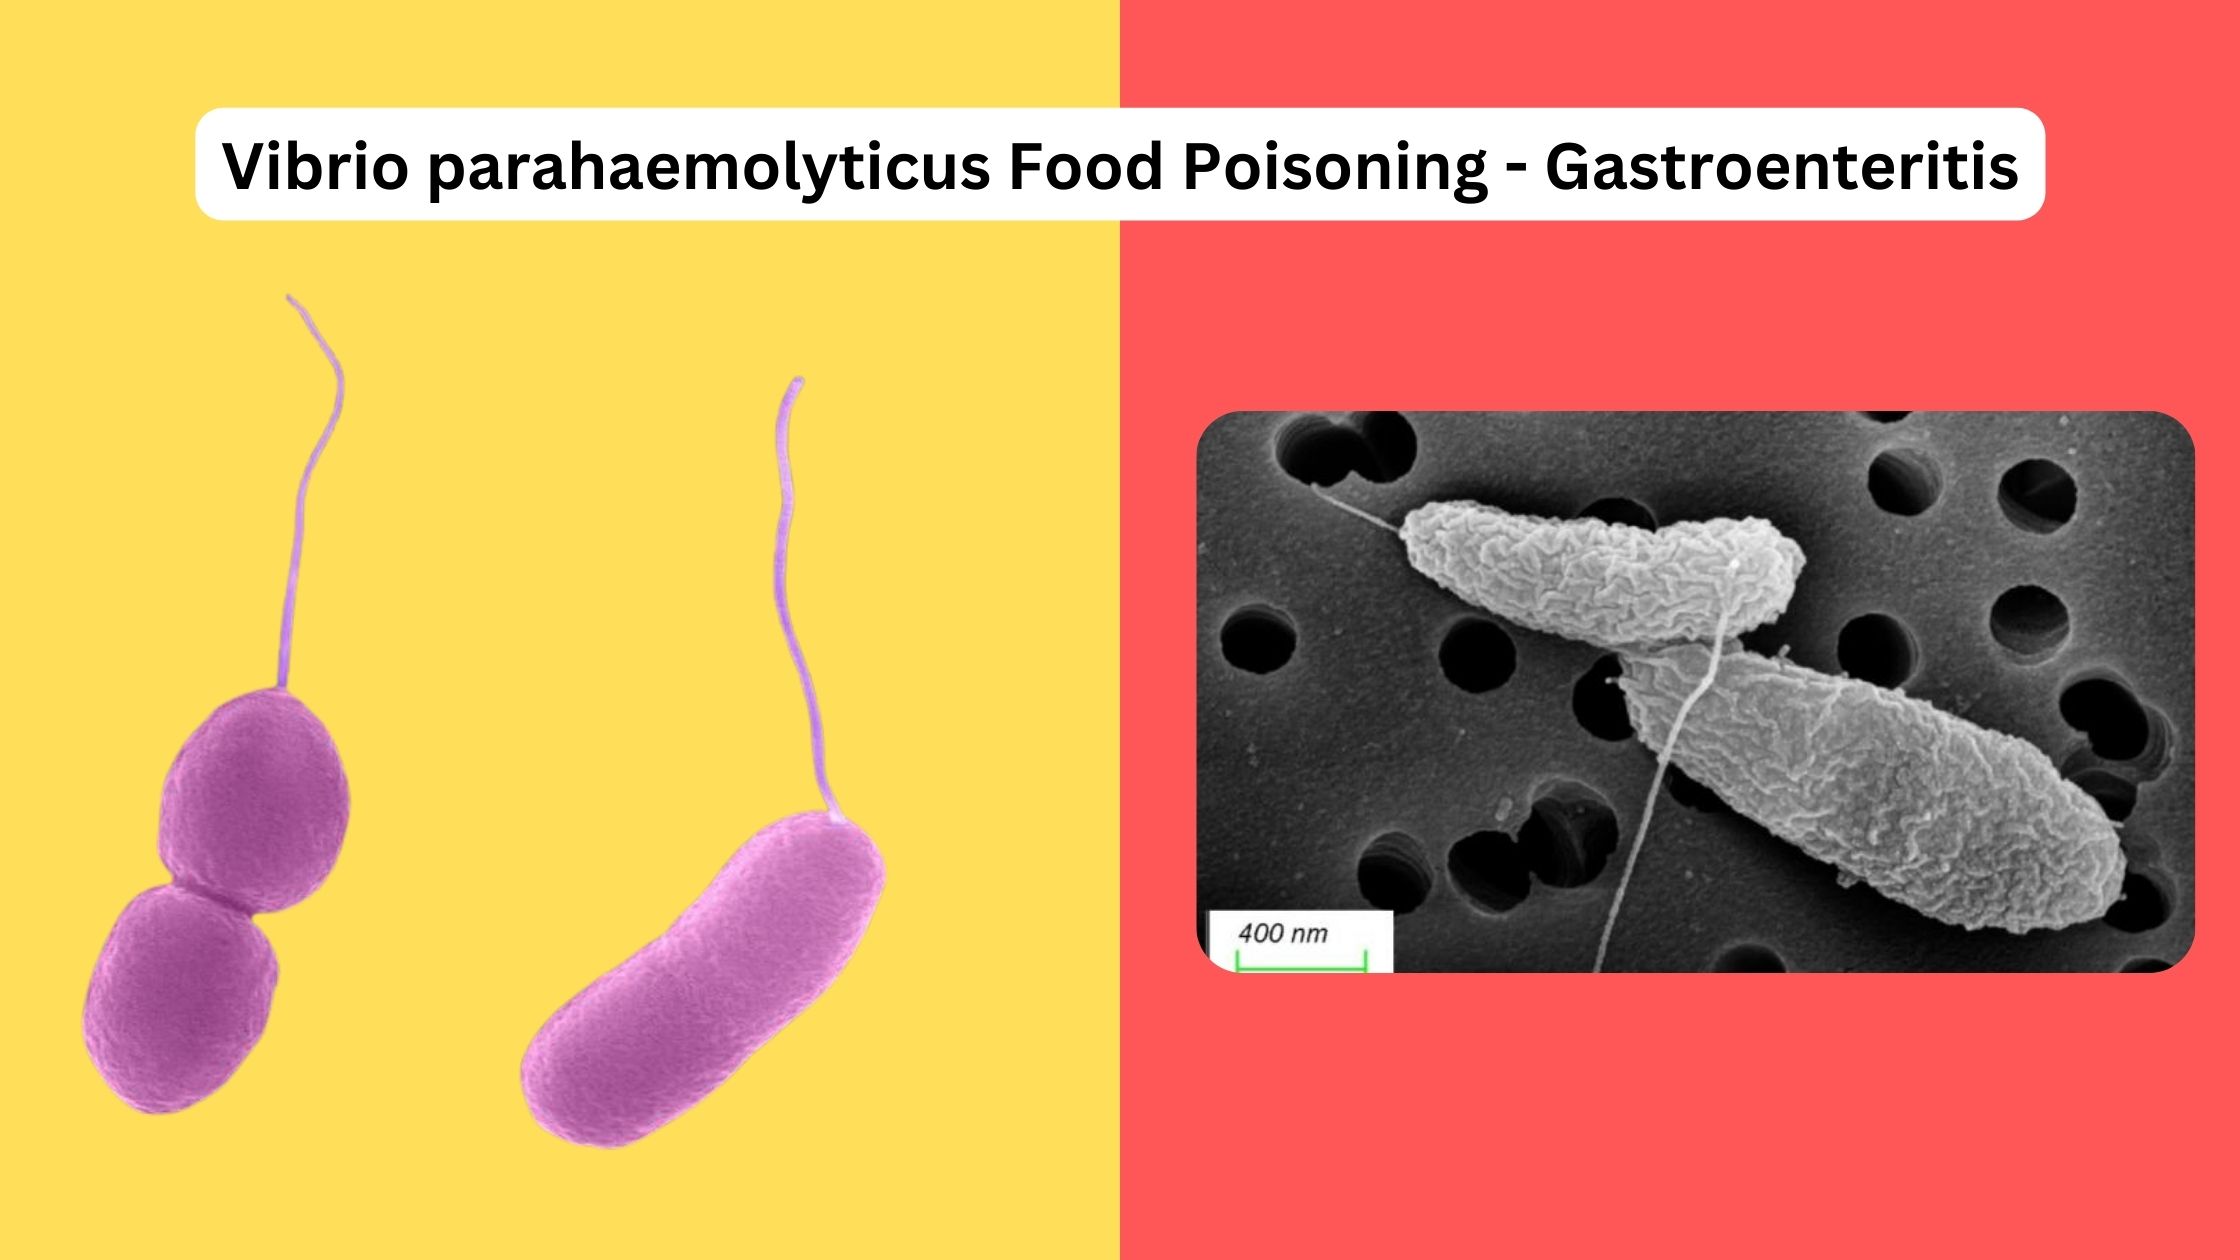 Vibrio parahaemolyticus Food Poisoning - Gastroenteritis